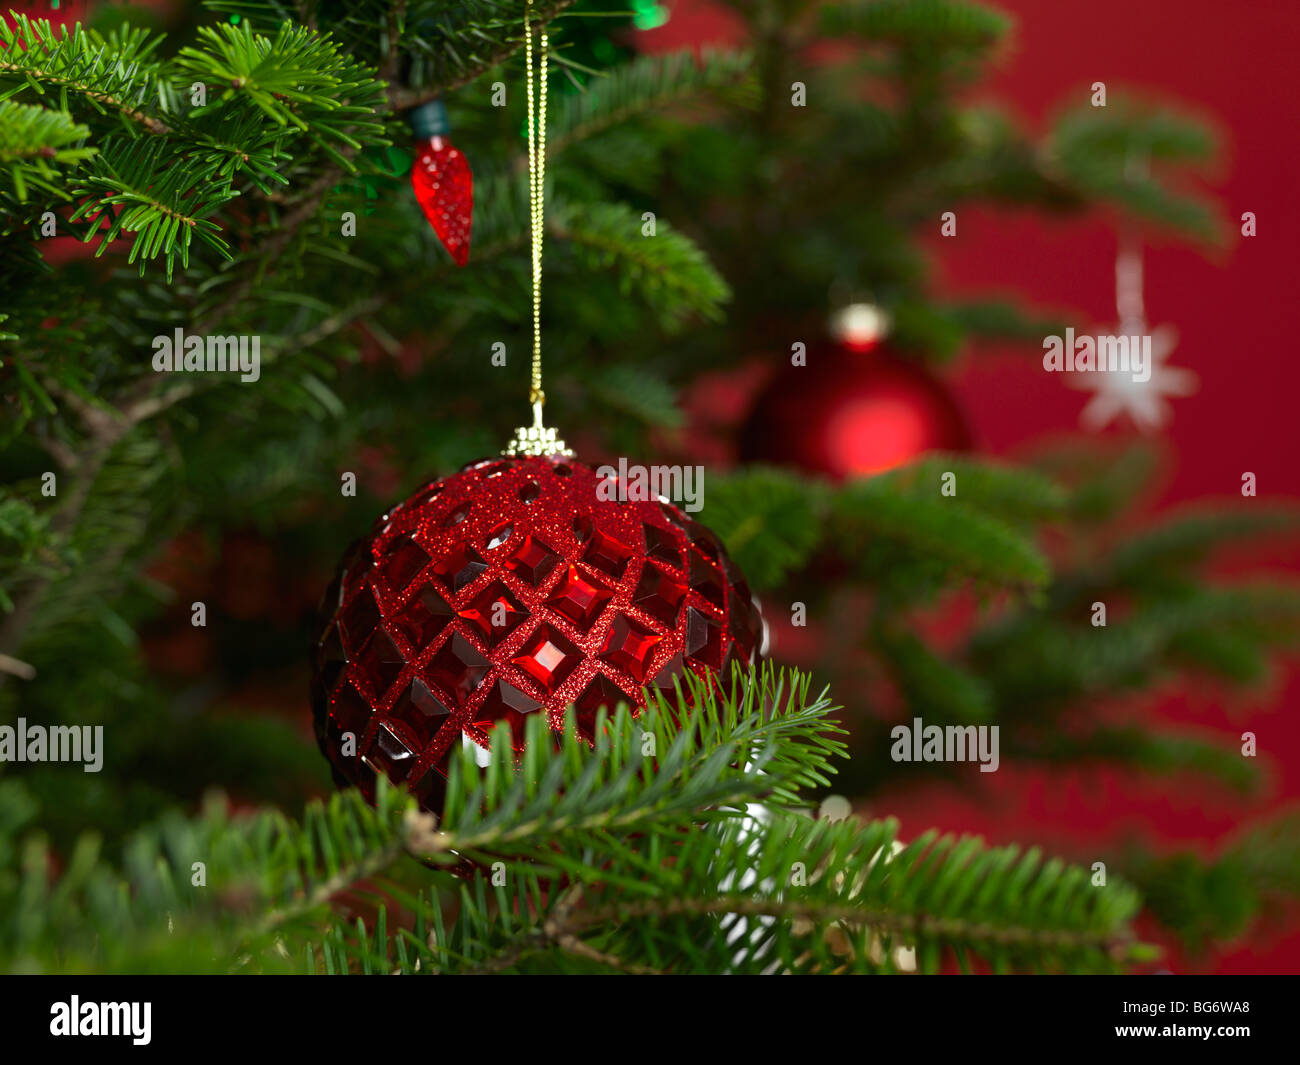 Christmas ornament on a Christmas tree Stock Photo